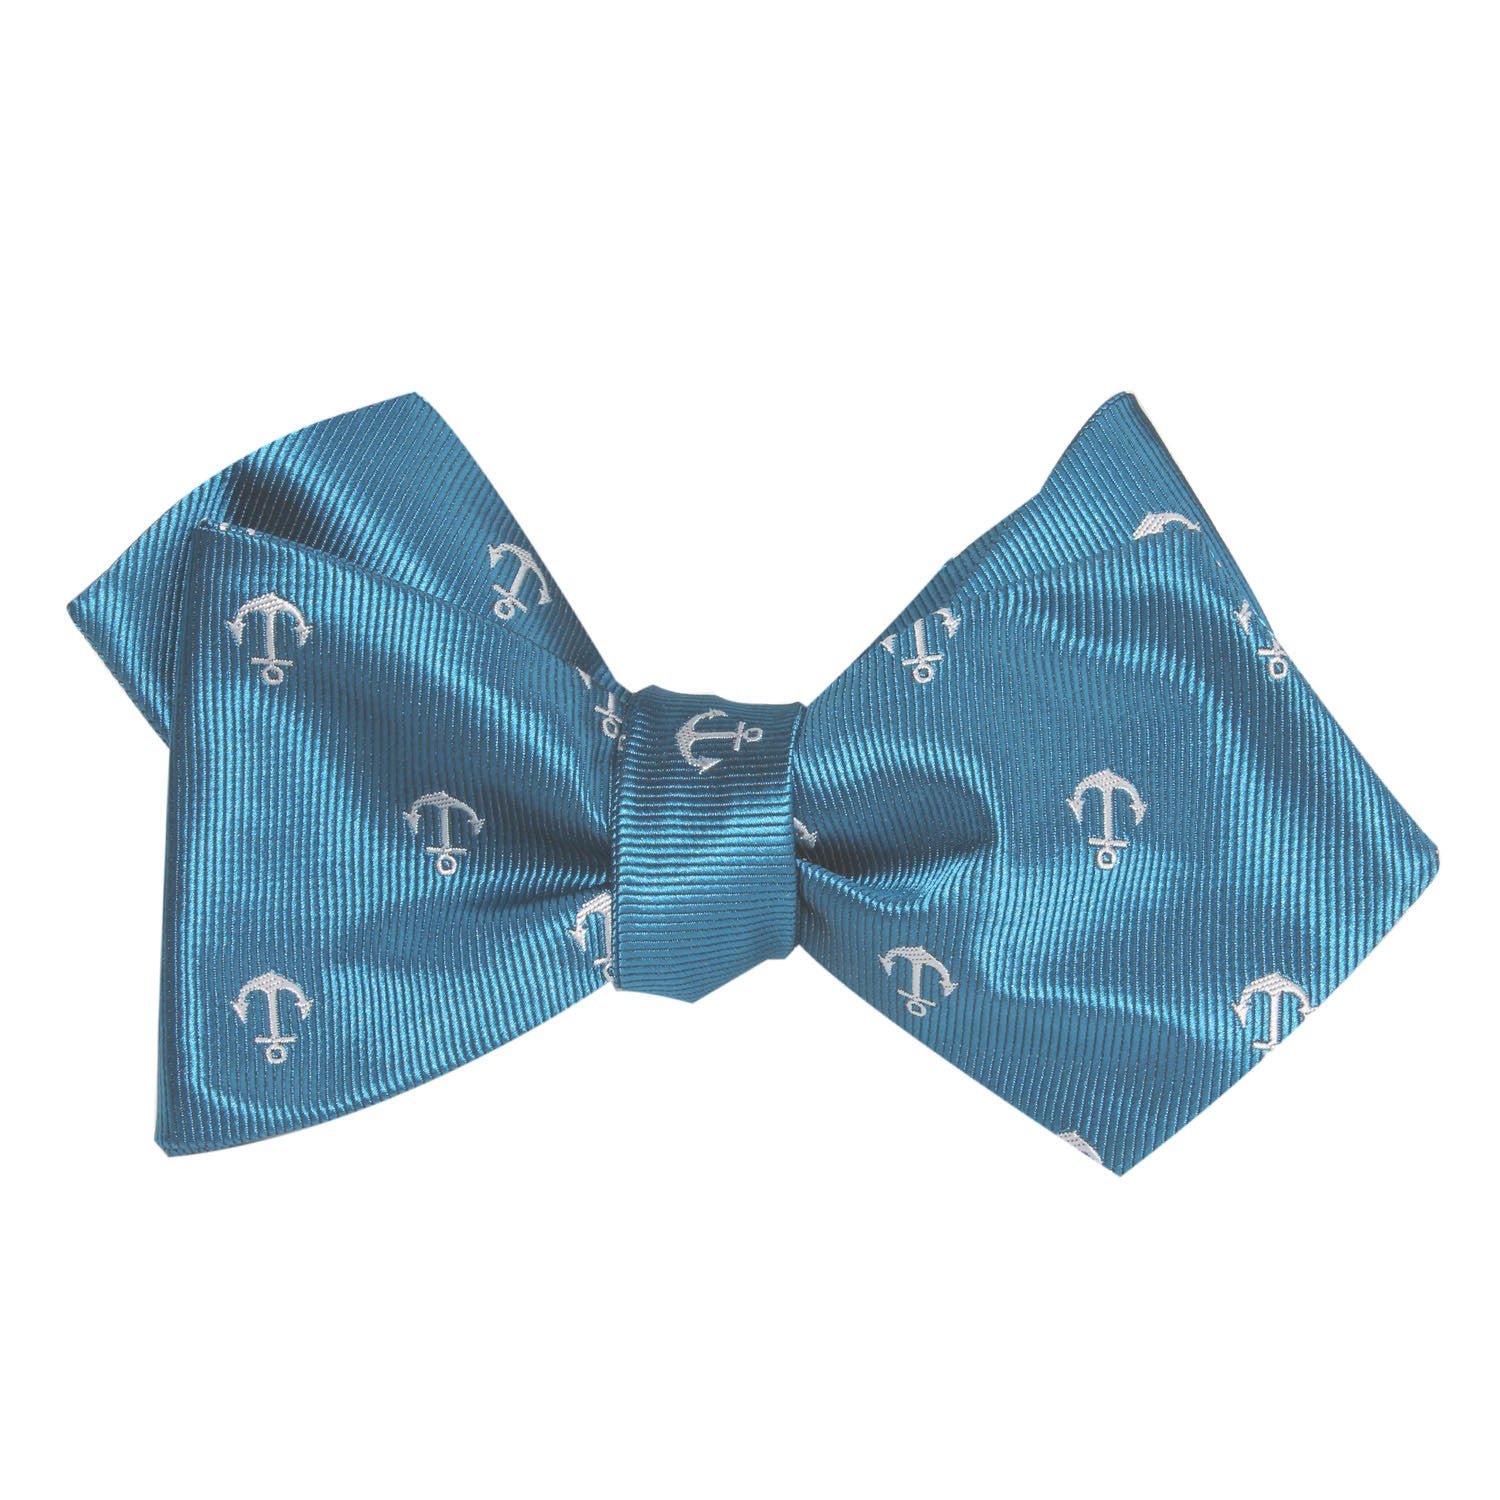 The OTAA Teal Blue Anchor Self Tie Diamond Tip Bow Tie 1